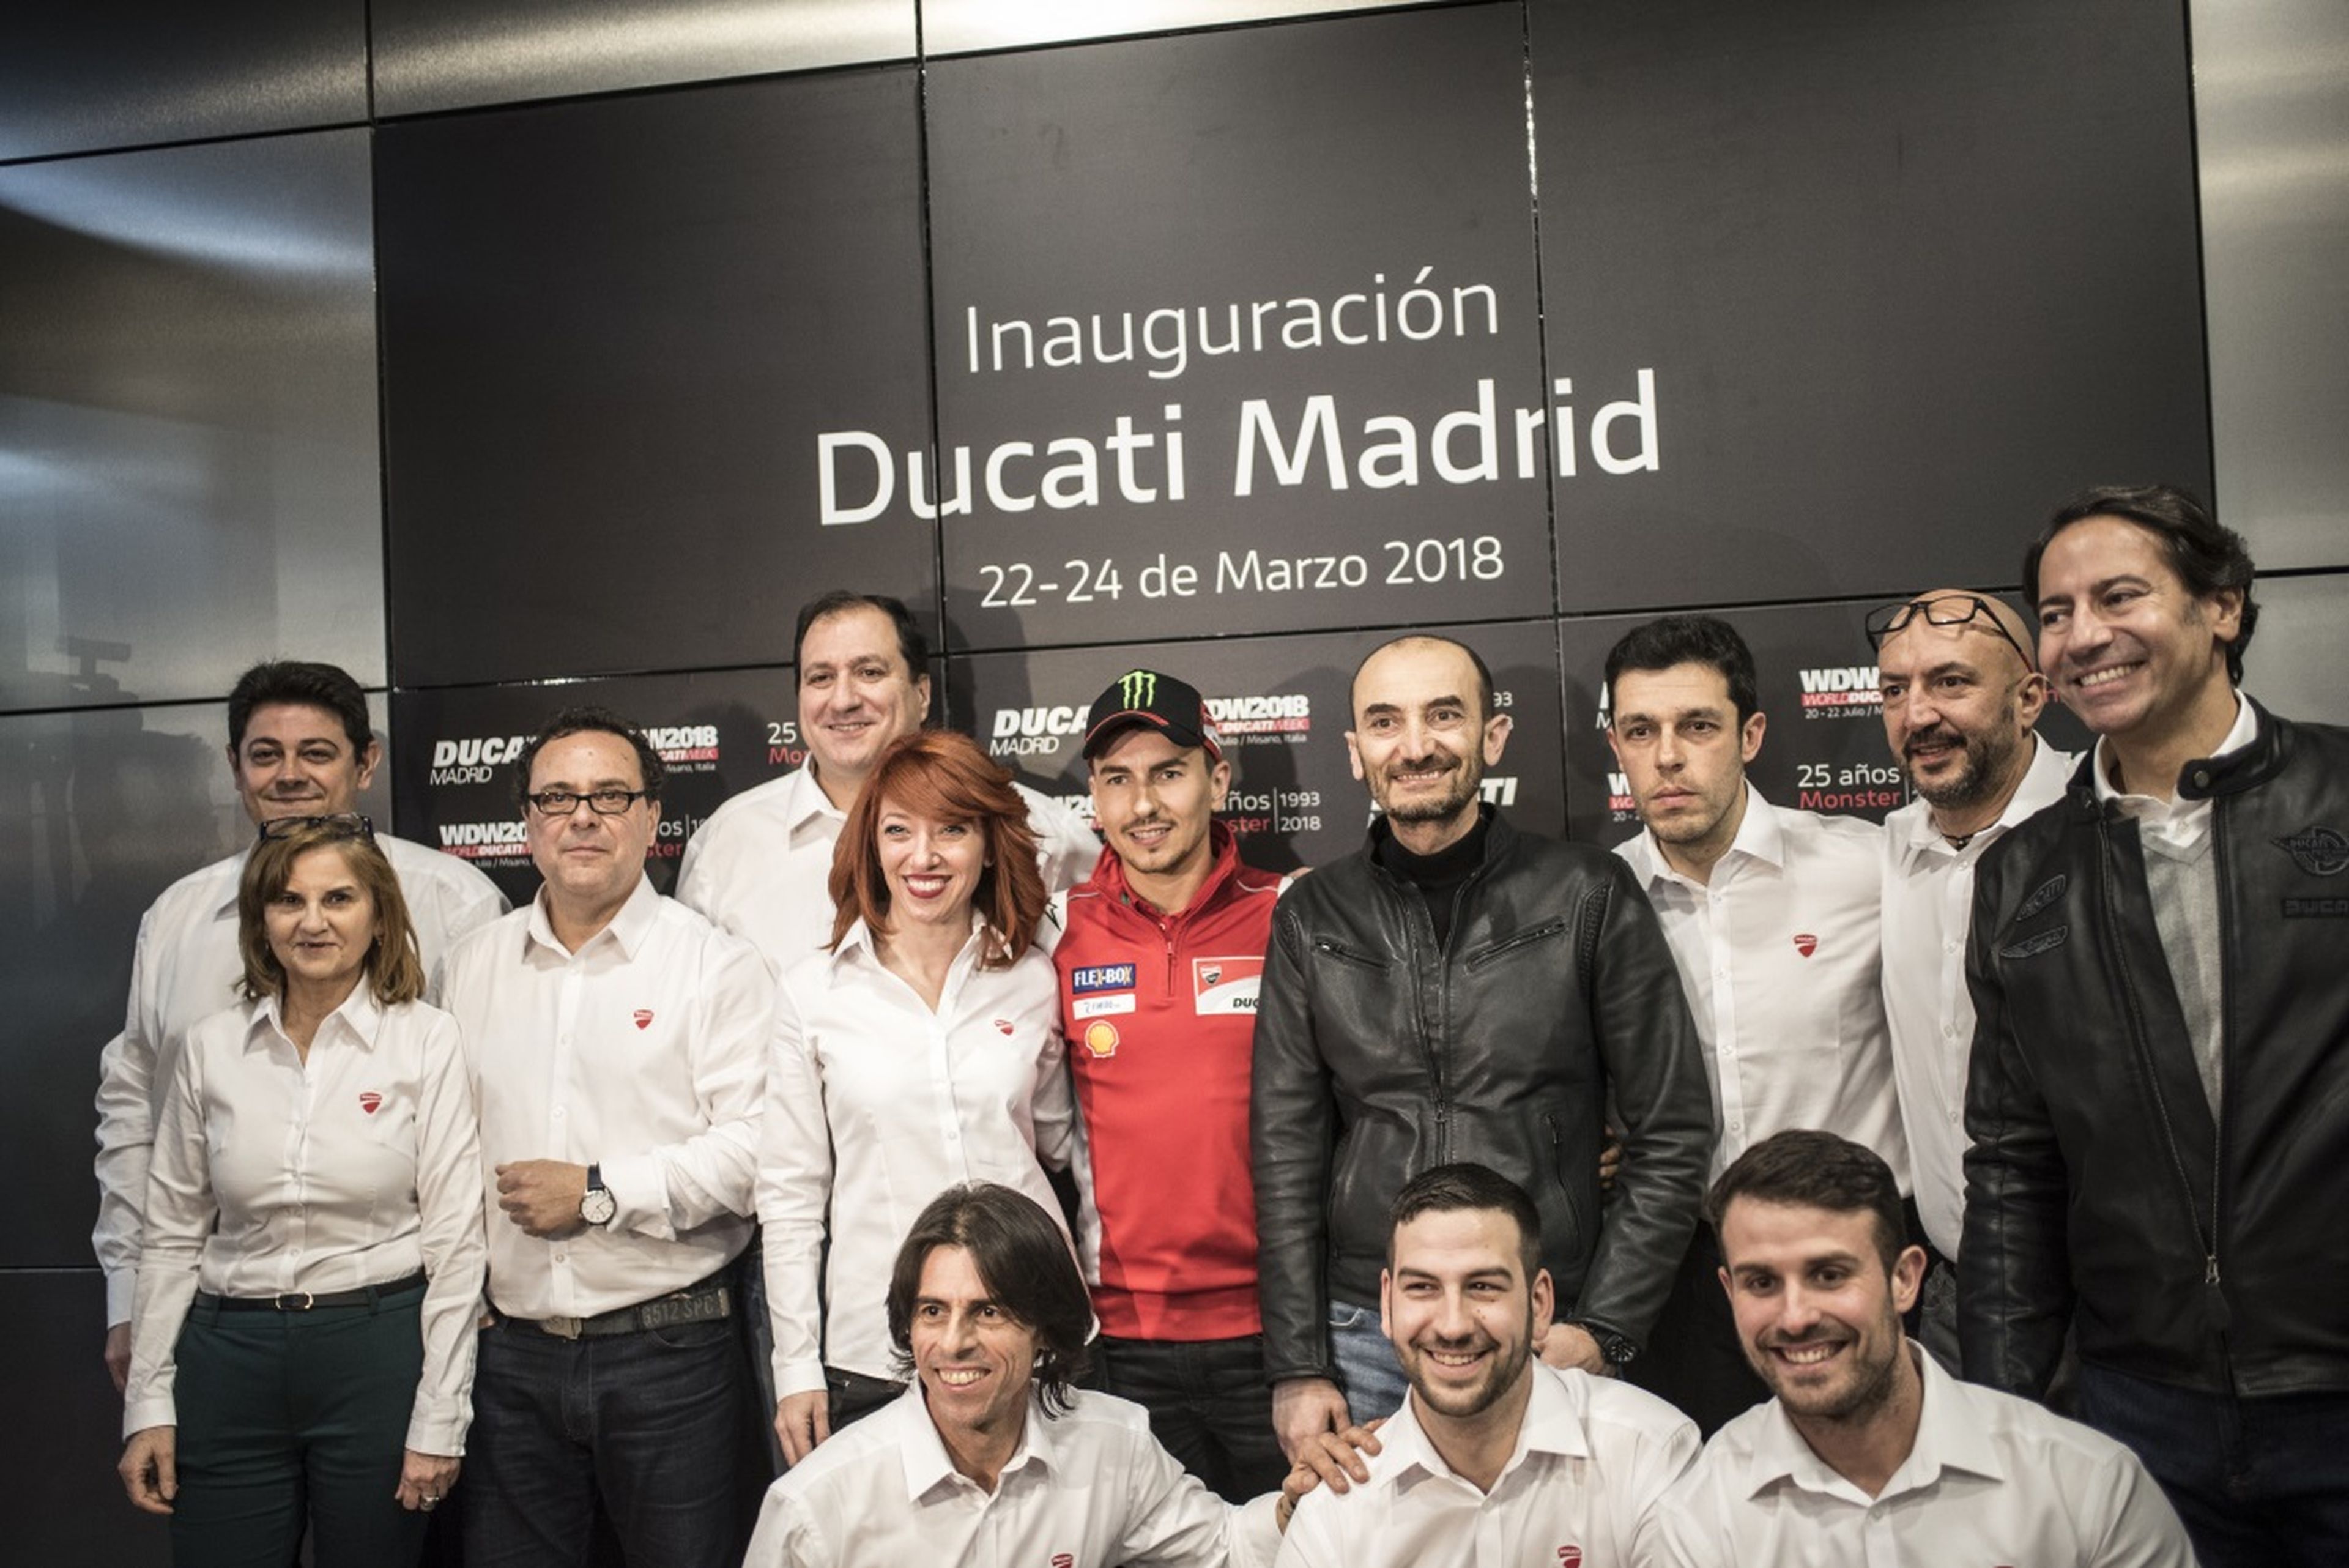 Ducati abre un nuevo concesionario en Madrid, el más grande de España